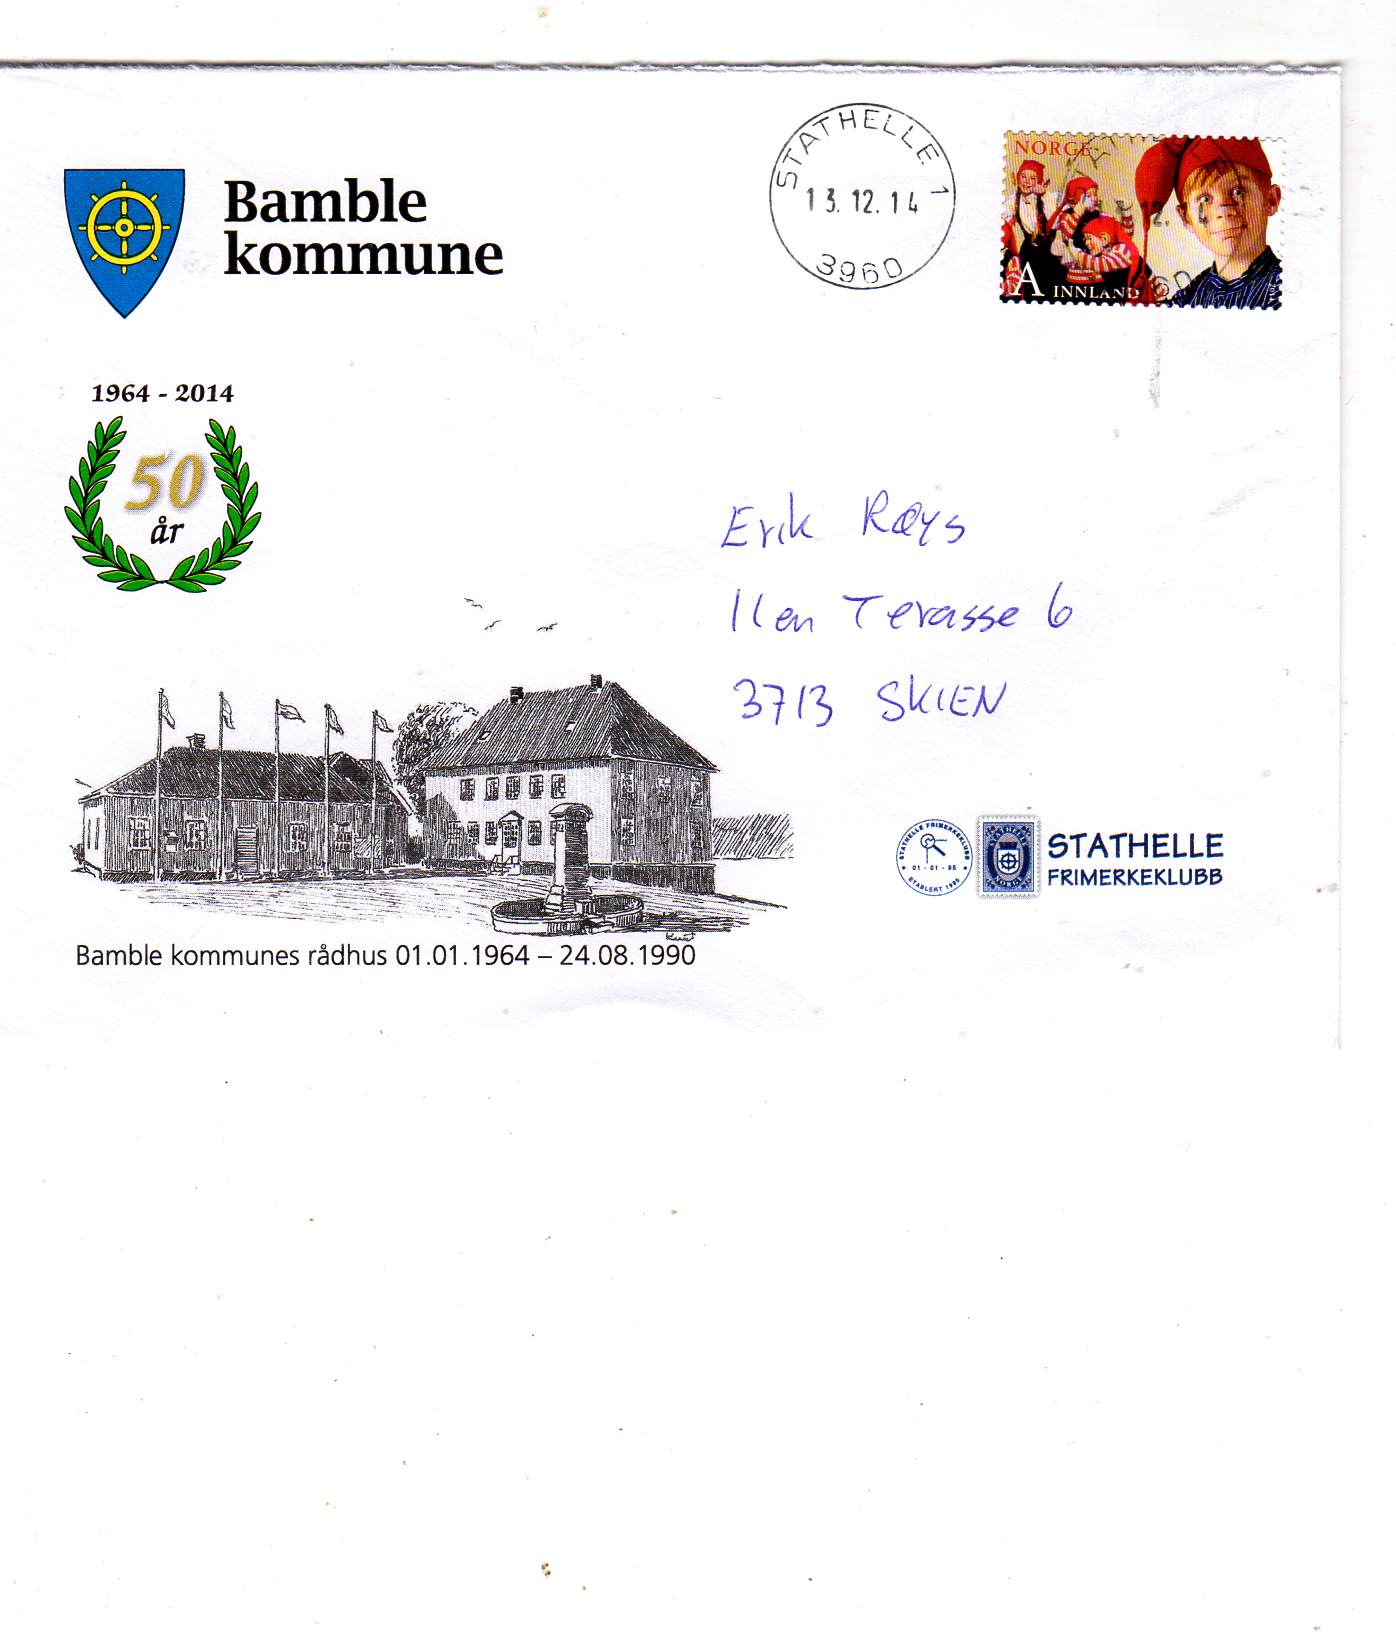 Bamble kommune st Stathelle 13 12 2014